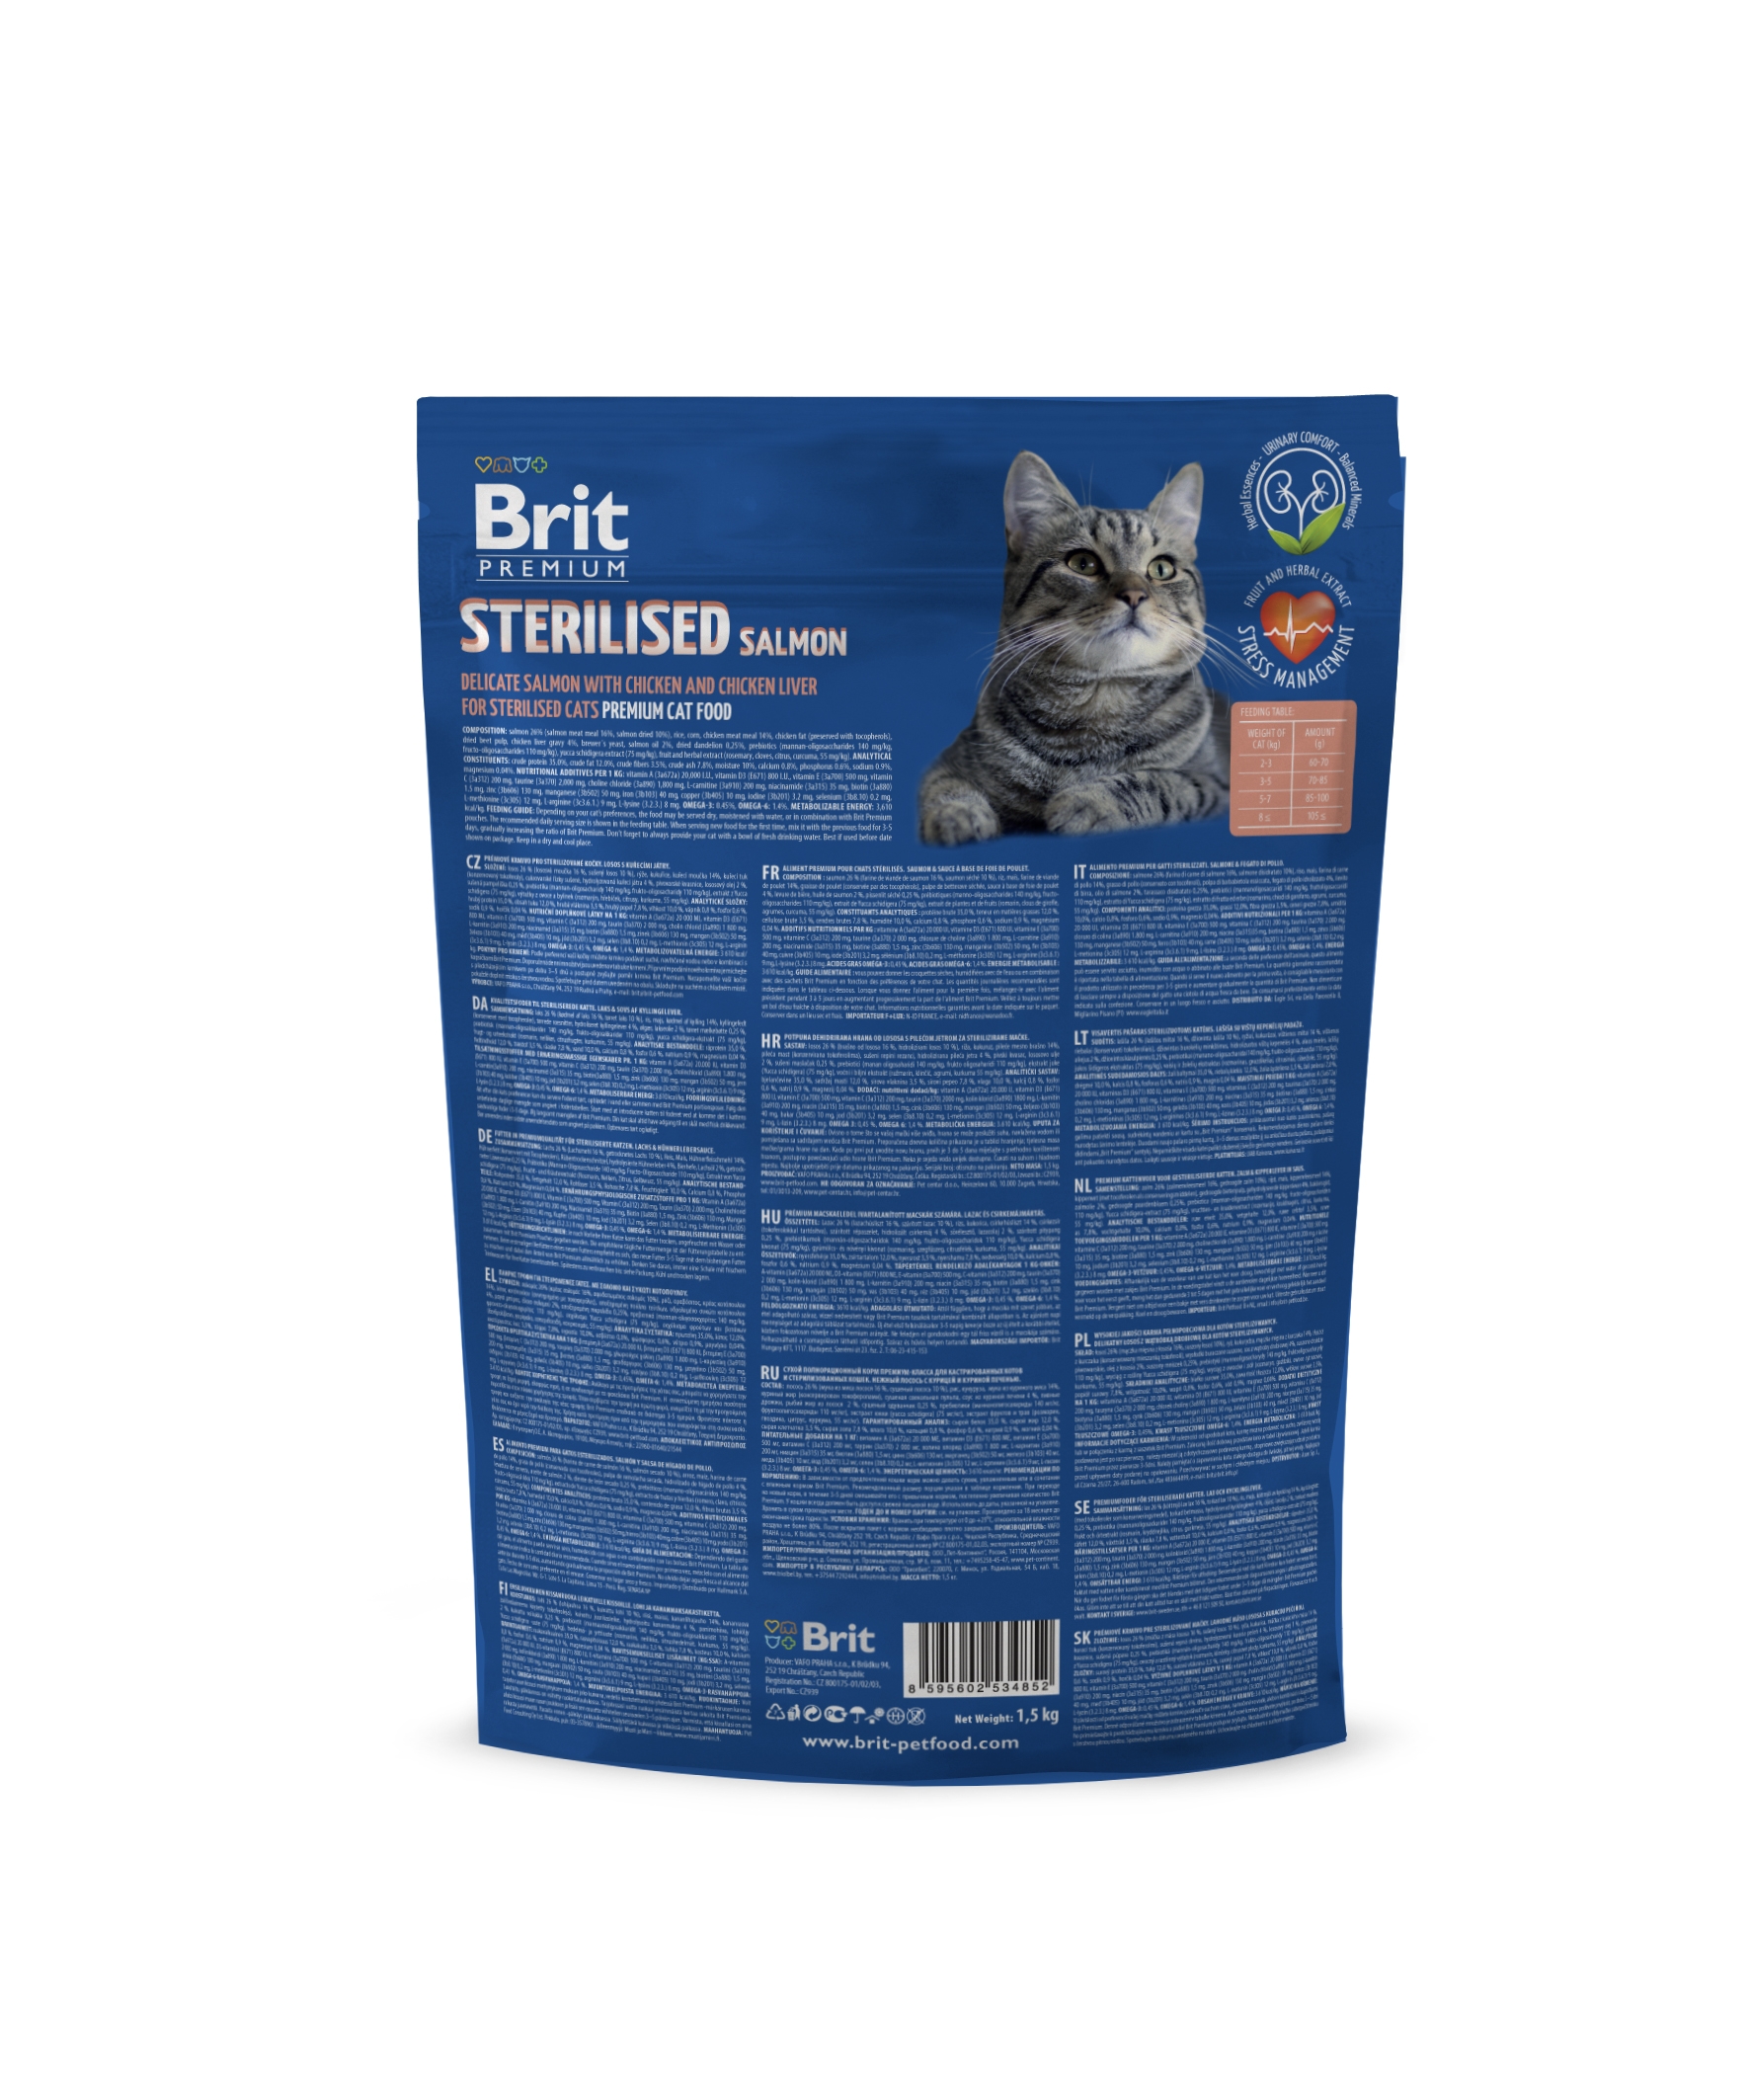 Брит д. Brit Sterilised корм для кошек. Brit Premium для кошек Sterilised. Сухой корм Brit Premium Cat Sterilized. Брит Premium Cat Adult Salmon корм с лососем для взрослых кошек.